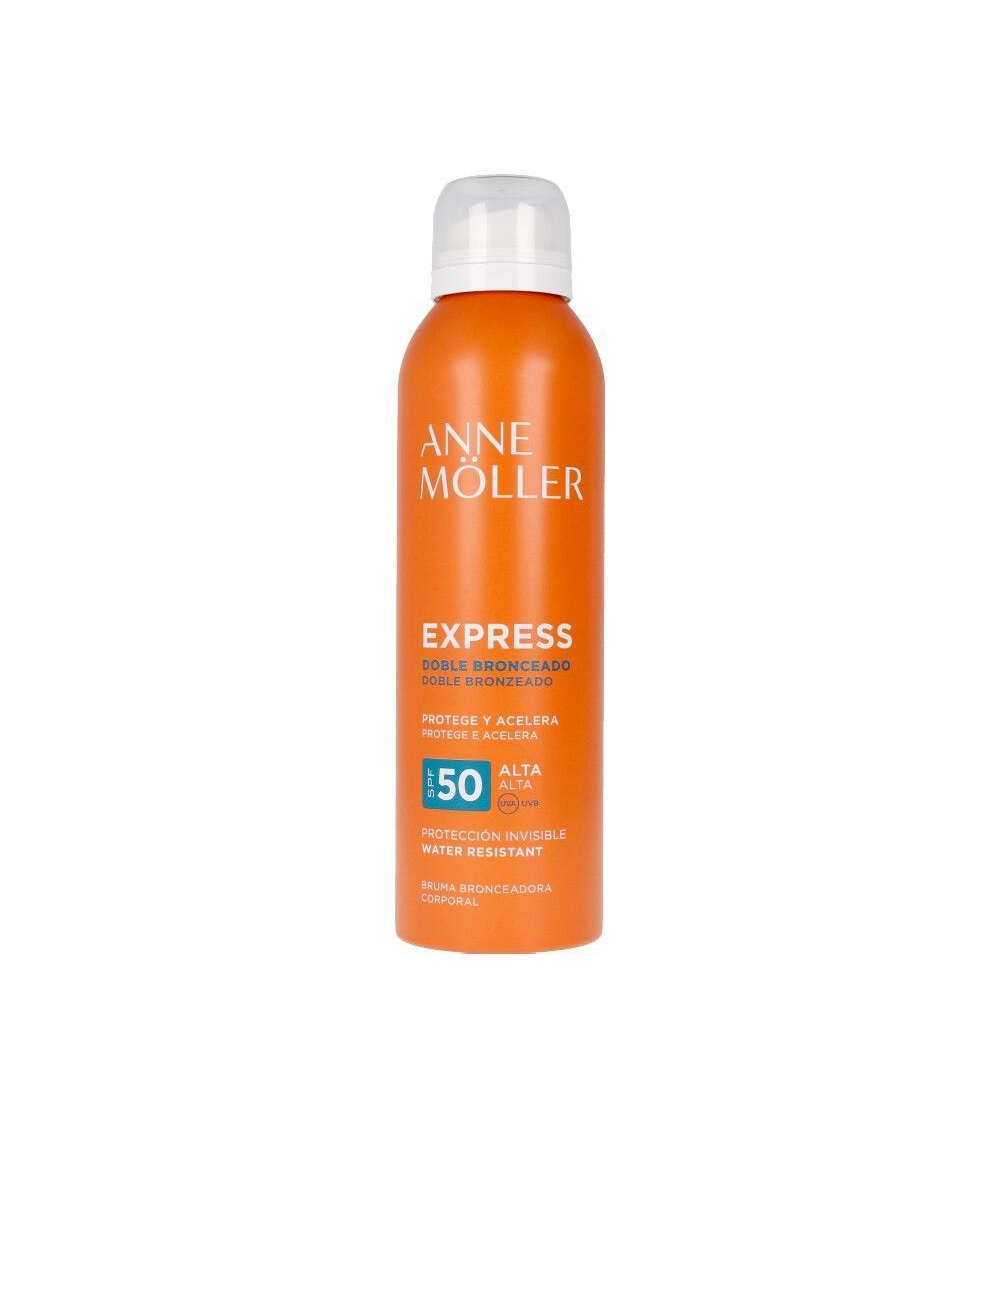 Anne moller express spray protector de corp SPF 50